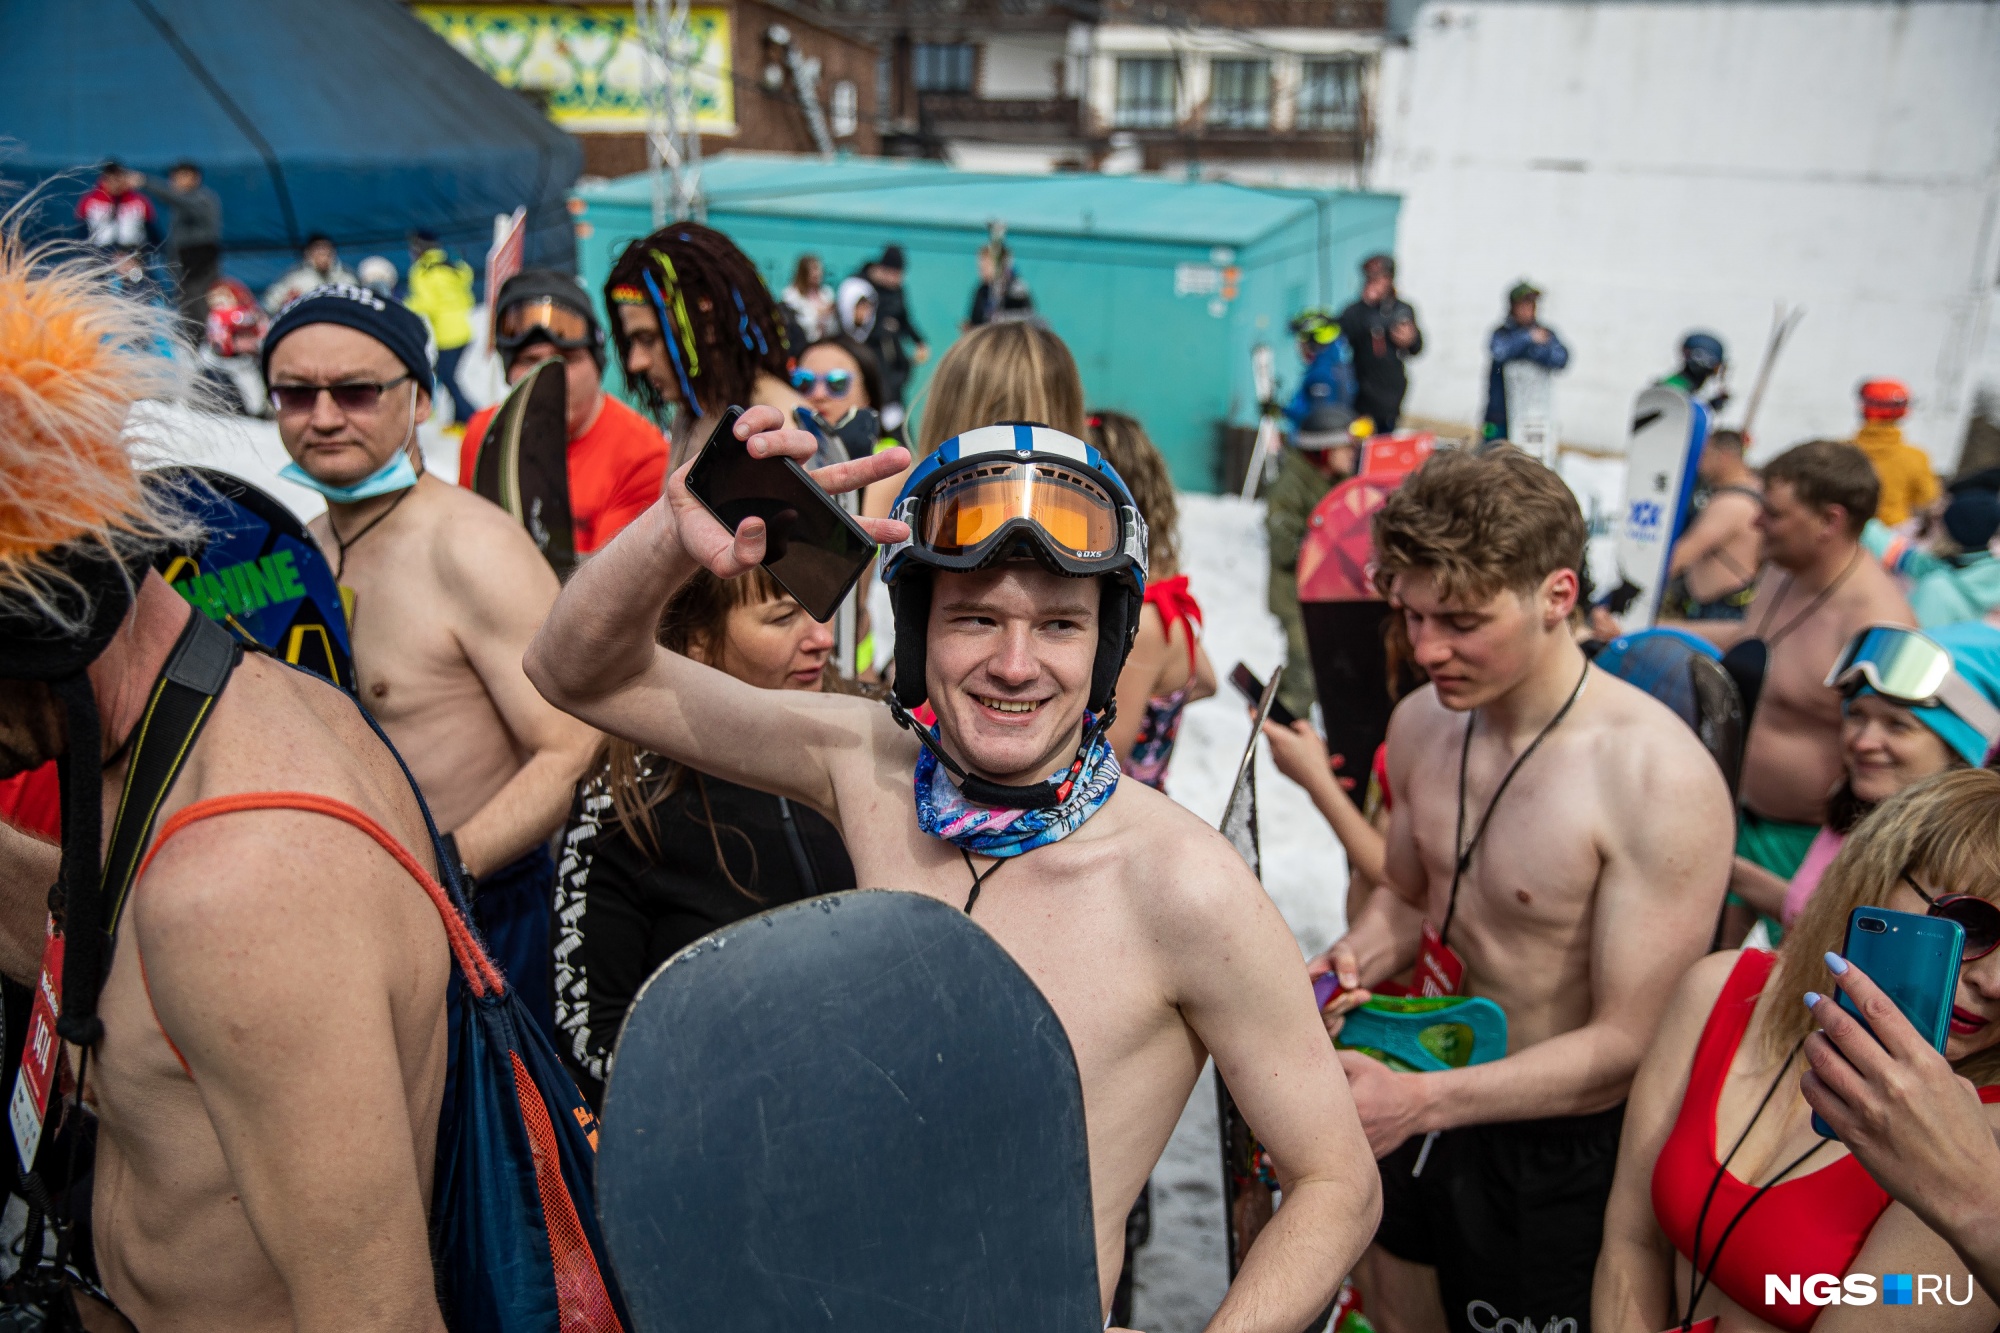 Впервые Grelka Fest прошел в 2013 году и запомнился прежде всего массовым спуском с горы более 1000 человек, одетых в купальные костюмы